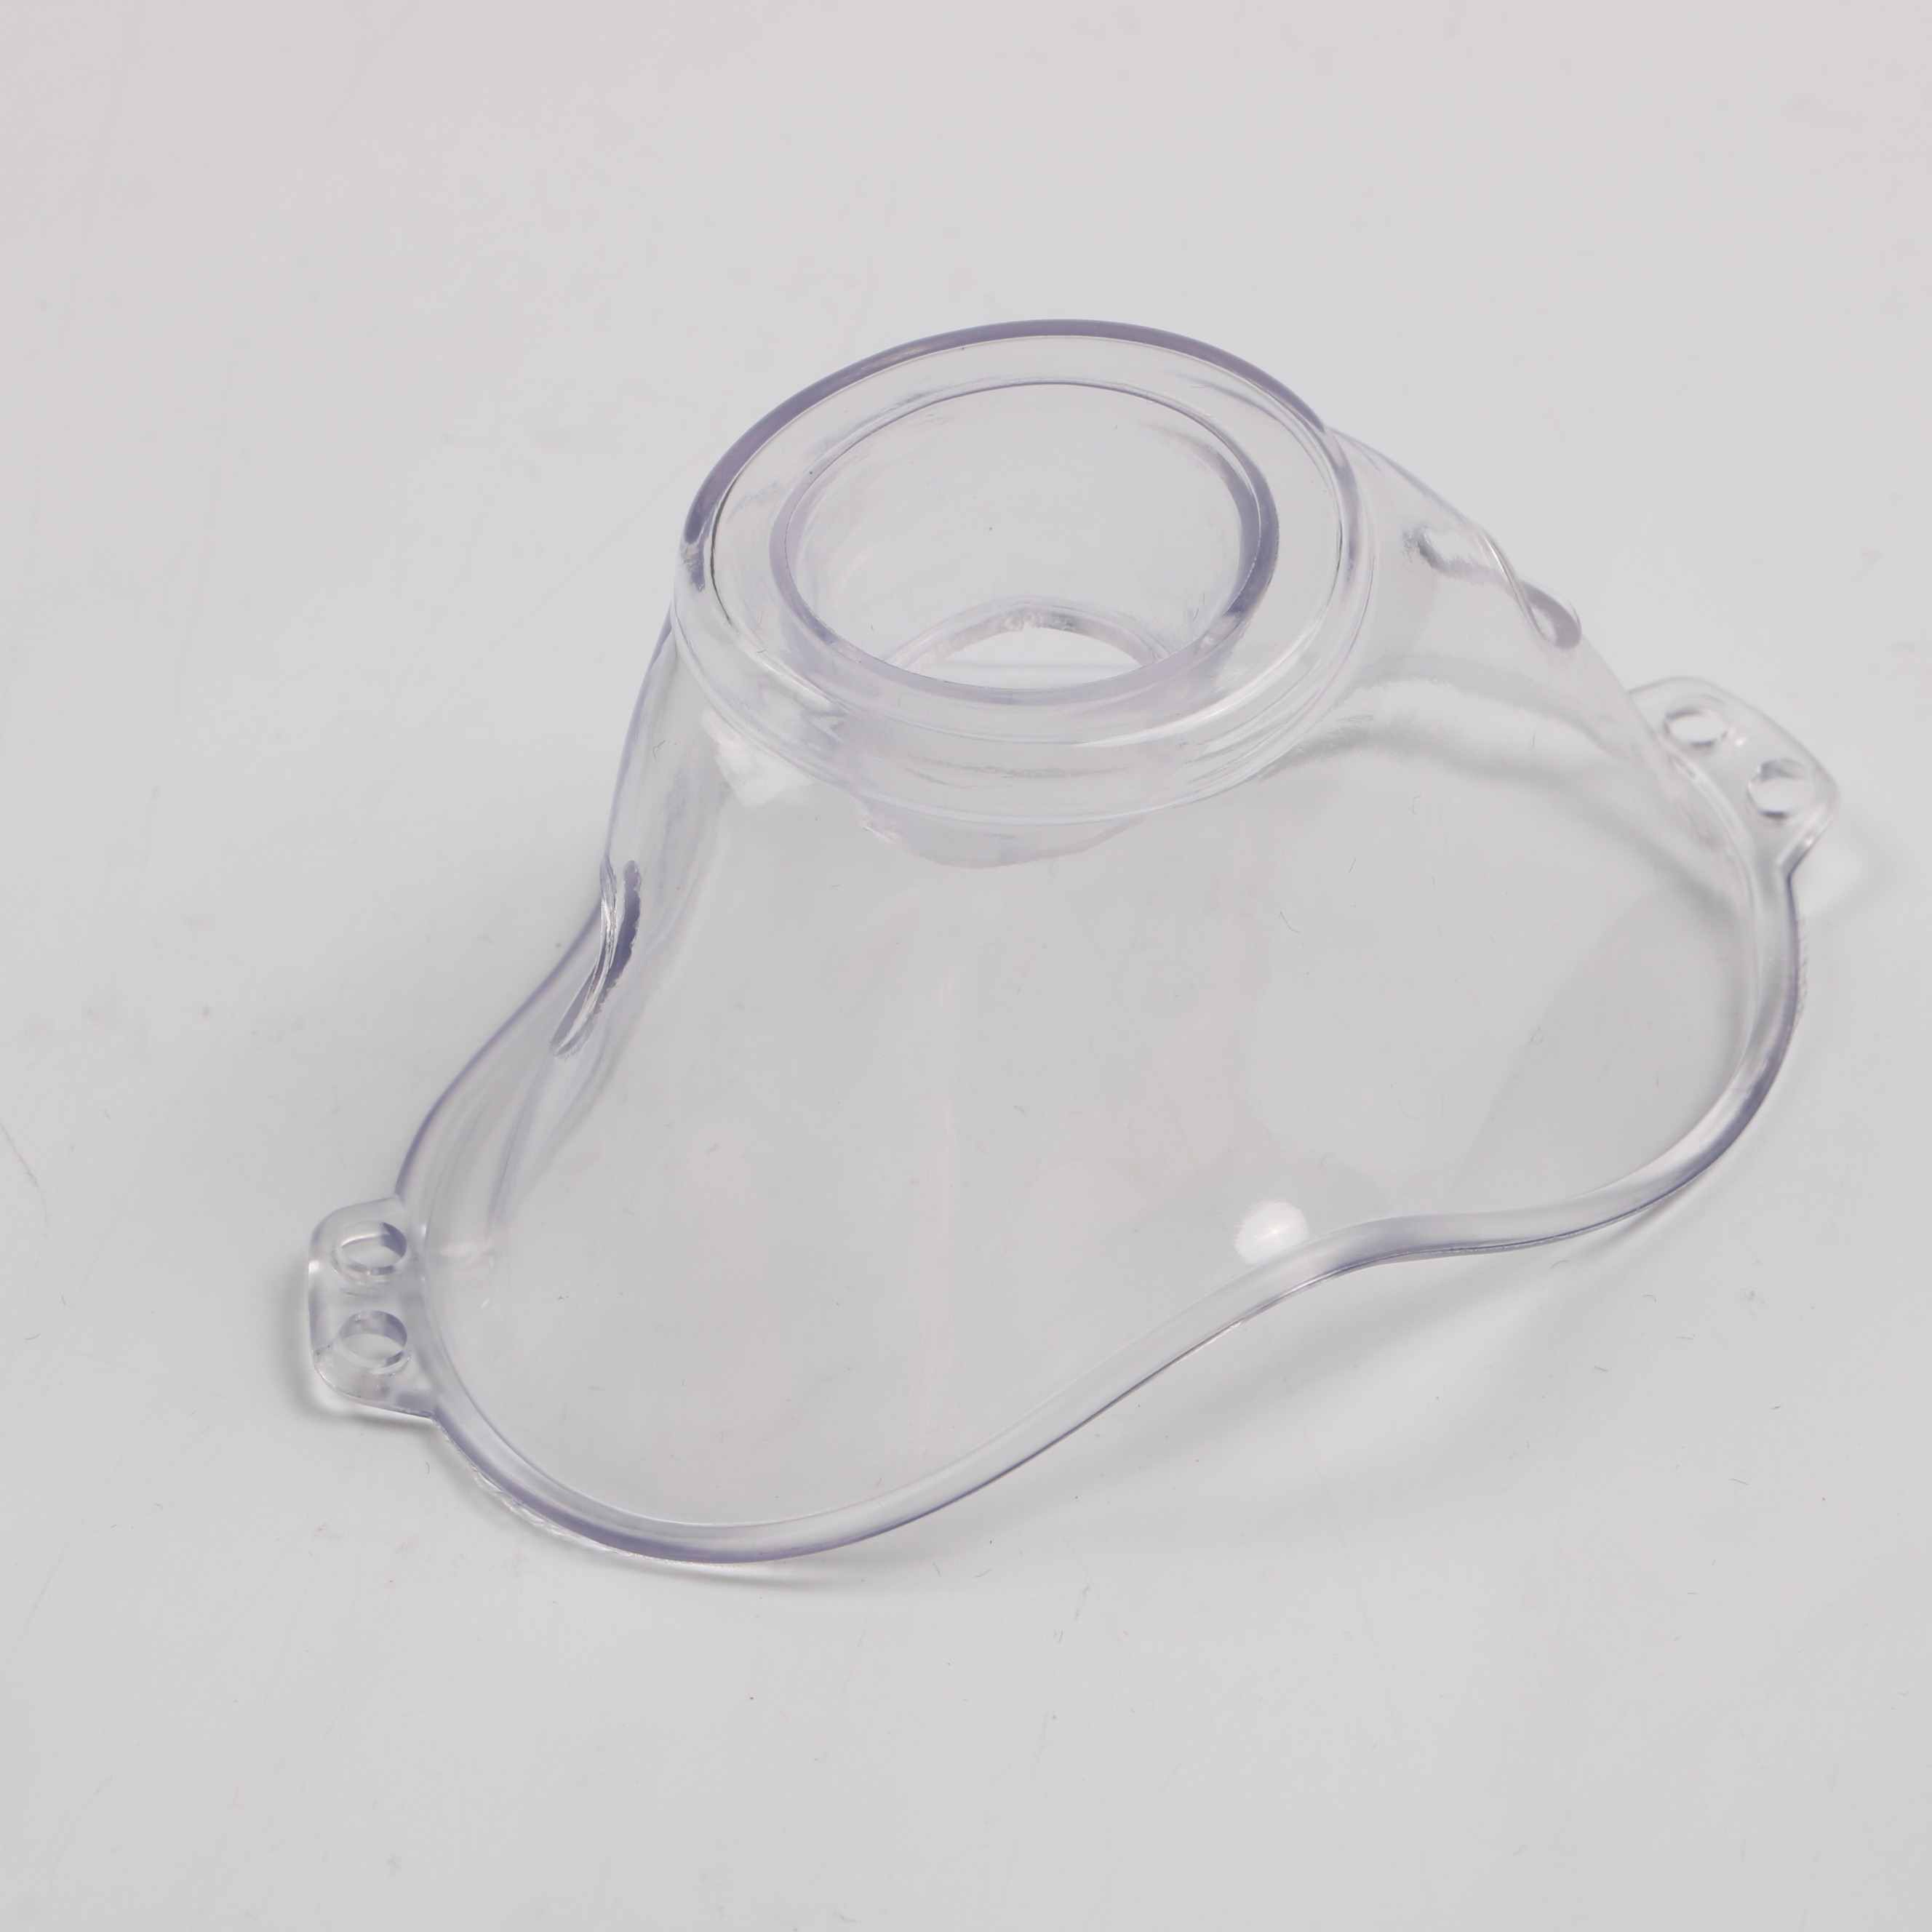 nebulizer mask set wth mouthpiece